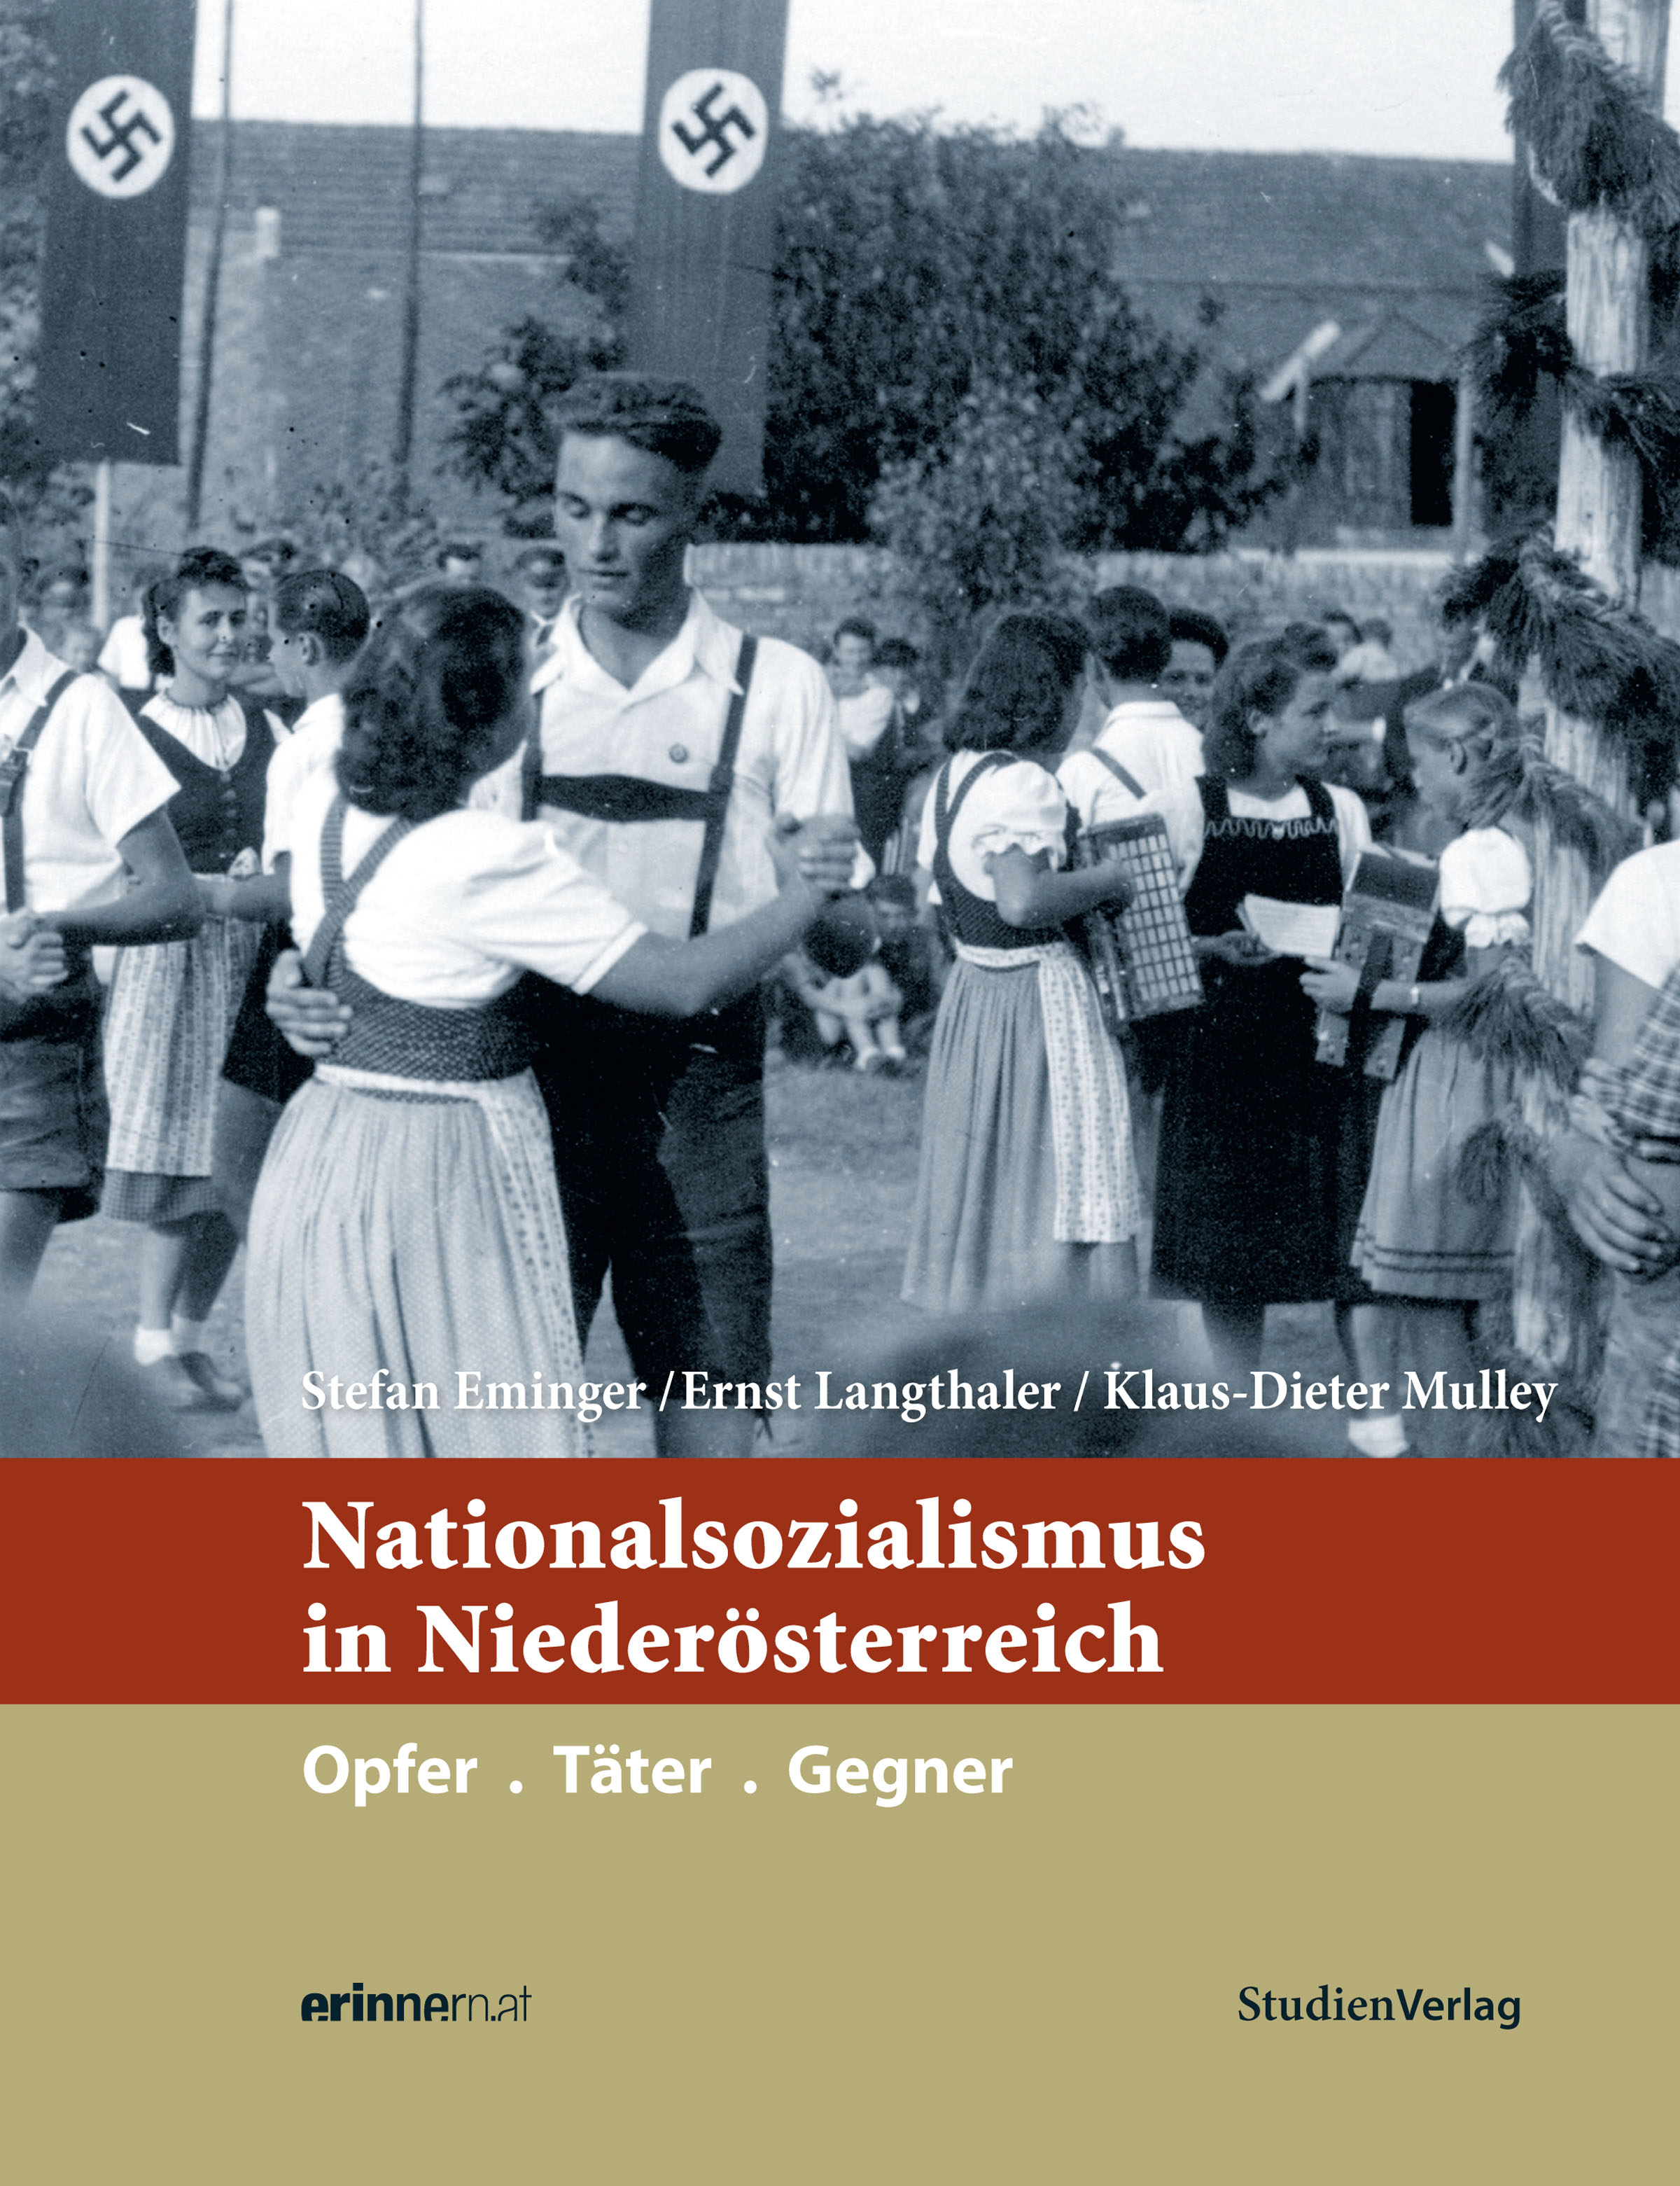 Der Niederösterreich Band komplettiert die neunbändige Jugensachbuchreihe "Nationalsozialismus in den Bundesländern".